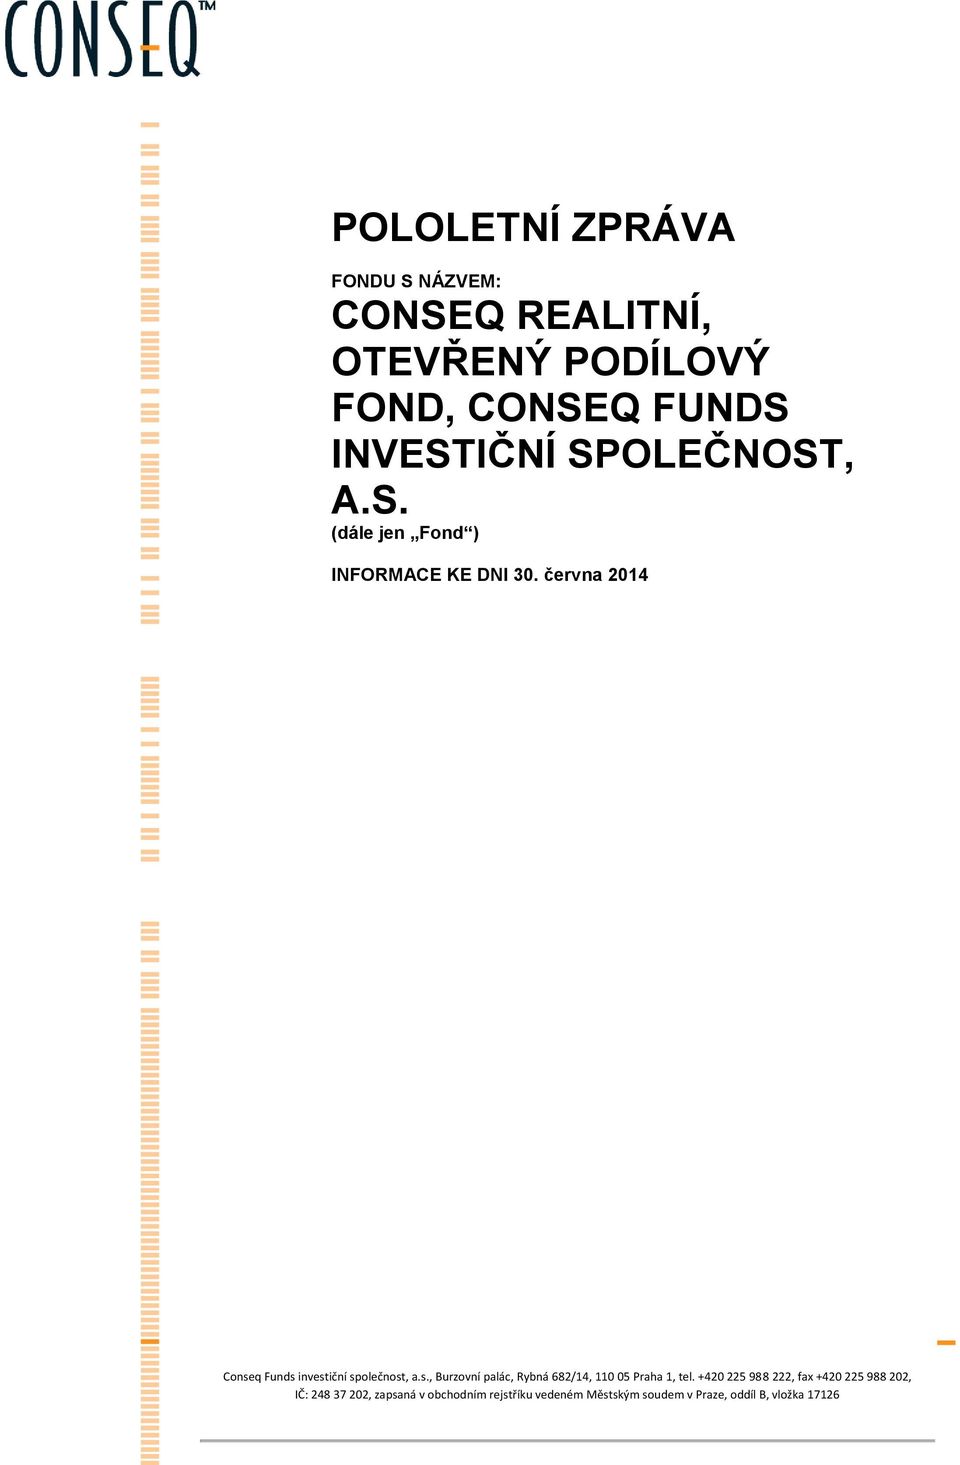 června 2014 Conseq Funds investiční společnost, a.s., Burzovní palác, Rybná 682/14, 110 05 Praha 1, tel.